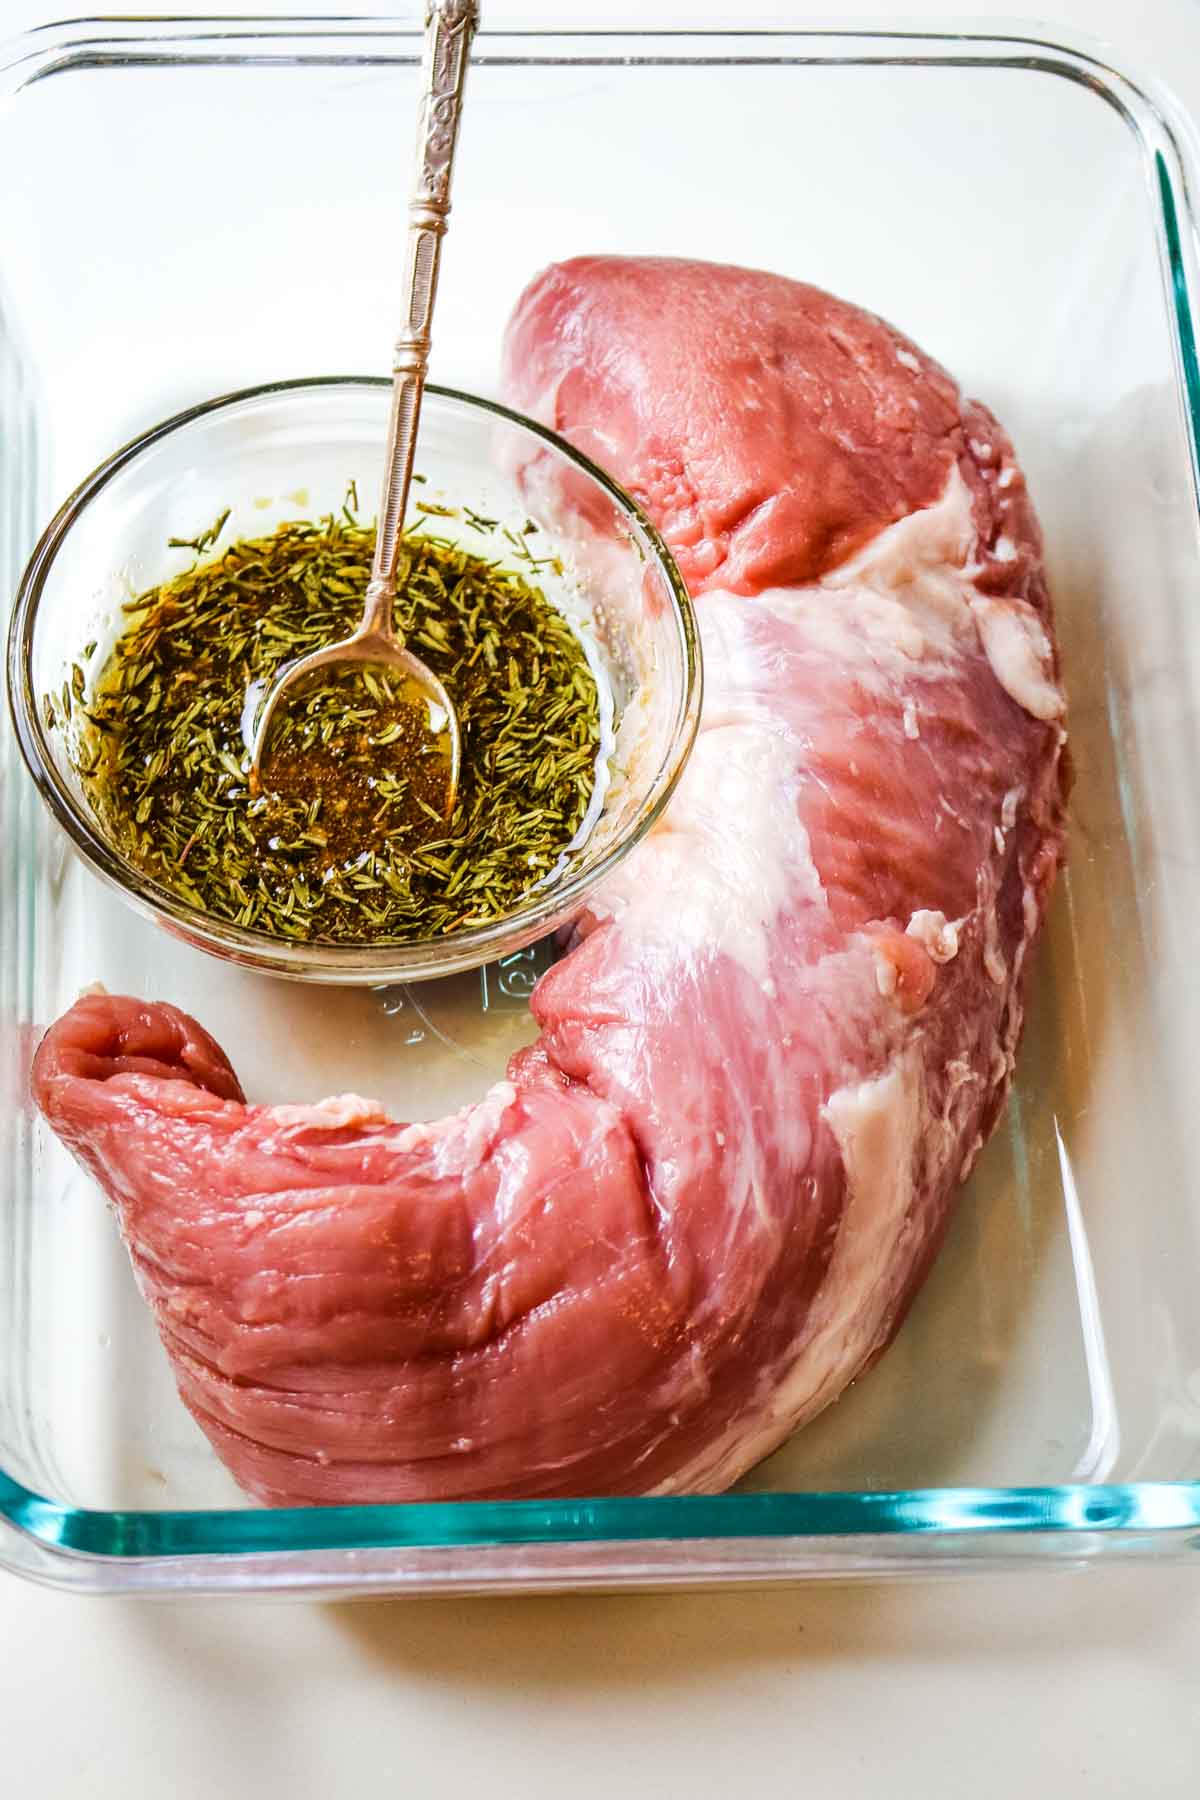 pork tenderlion in a dish